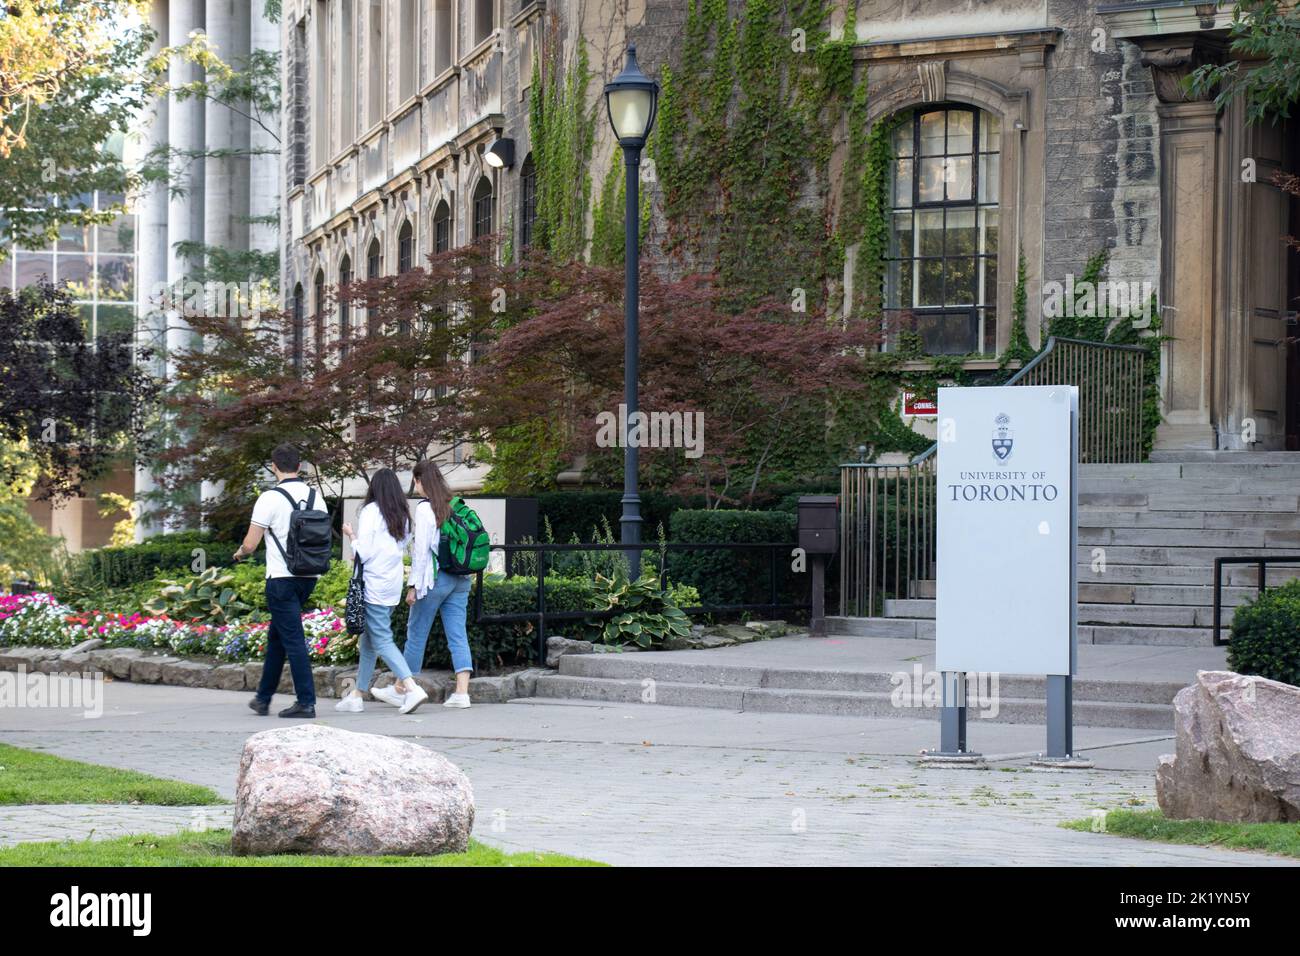 Les étudiants marchent à côté d'un édifice avec un panneau pour l'Université de Toronto, vu sur le campus pendant un après-midi ensoleillé. Banque D'Images